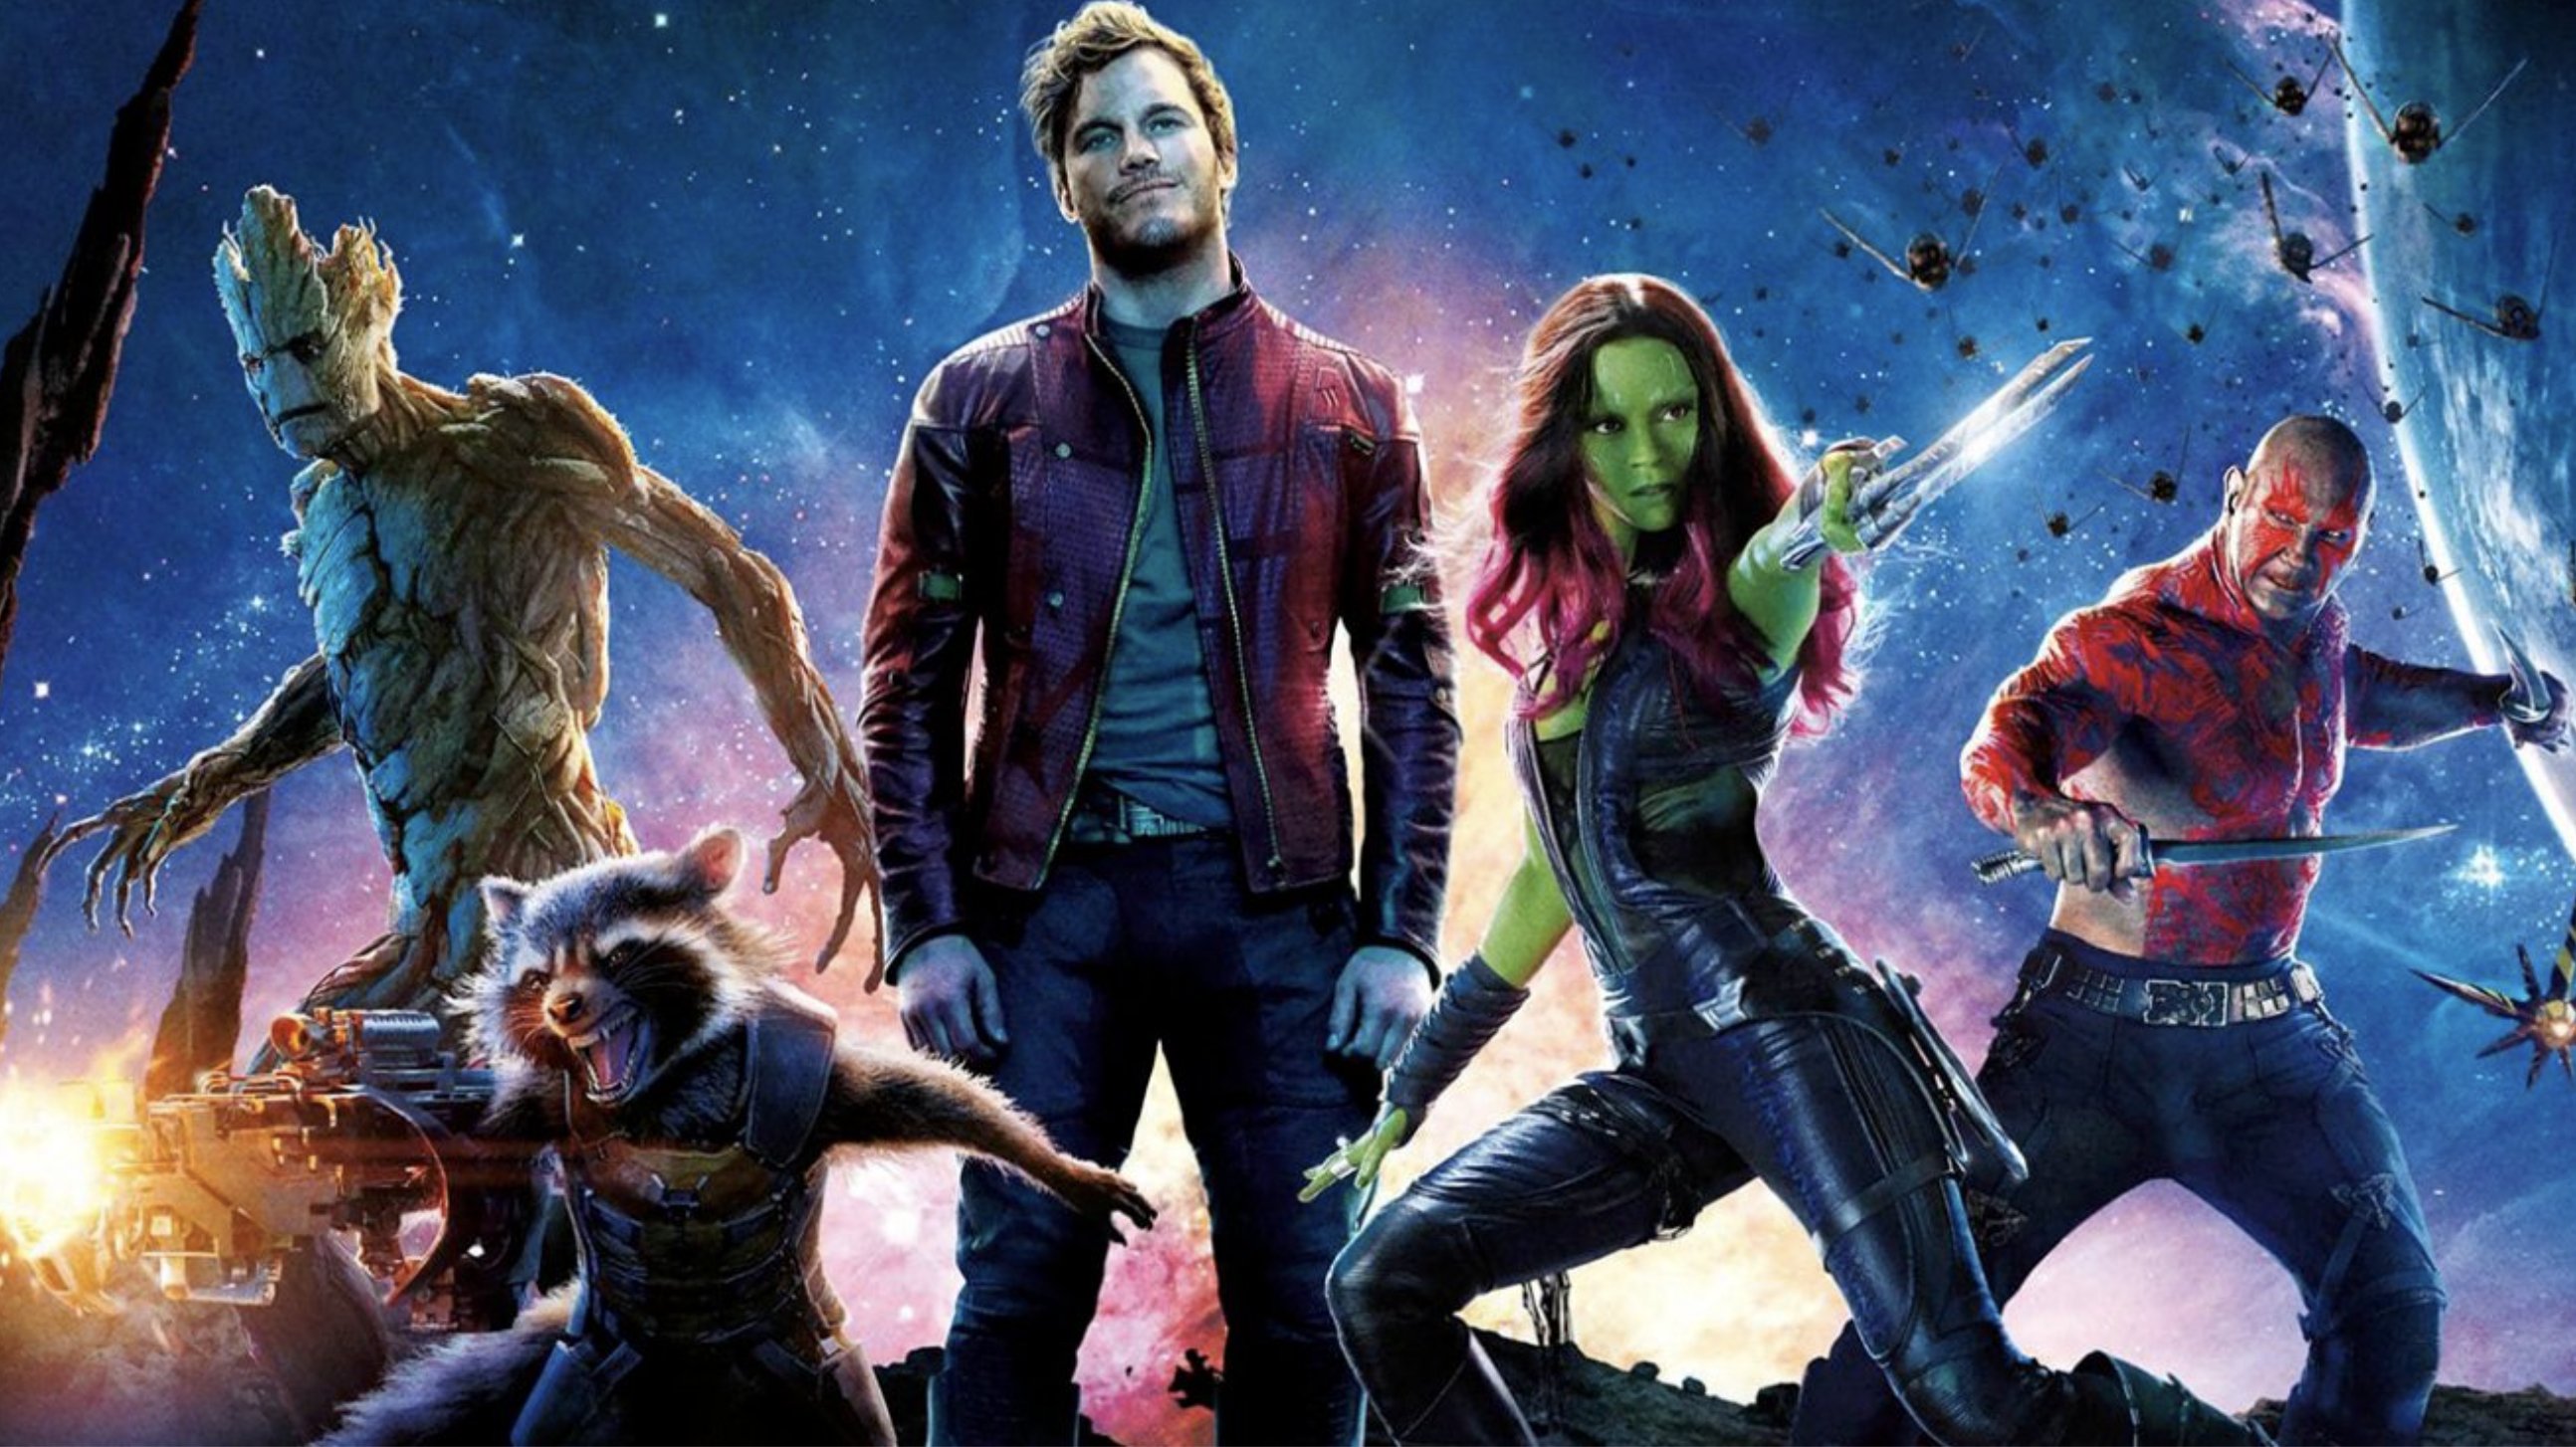 Les Gardiens de la Galaxie 3 : James Gunn annonce la fin de l'équipe de super-héros